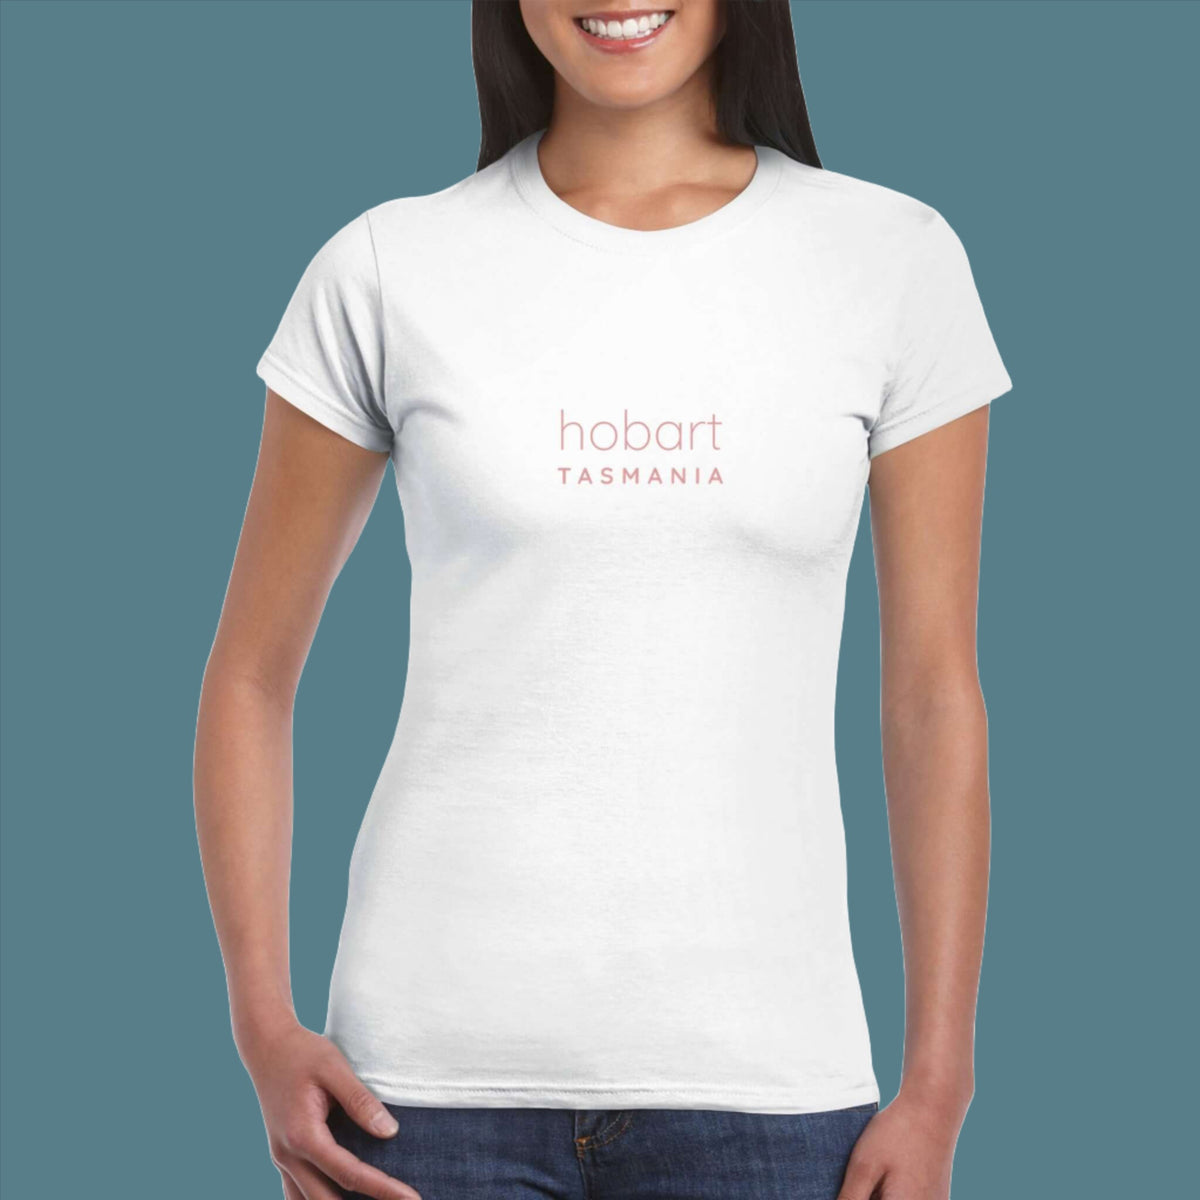 Womens Hobart Tasmania white t shirt - MangoBap